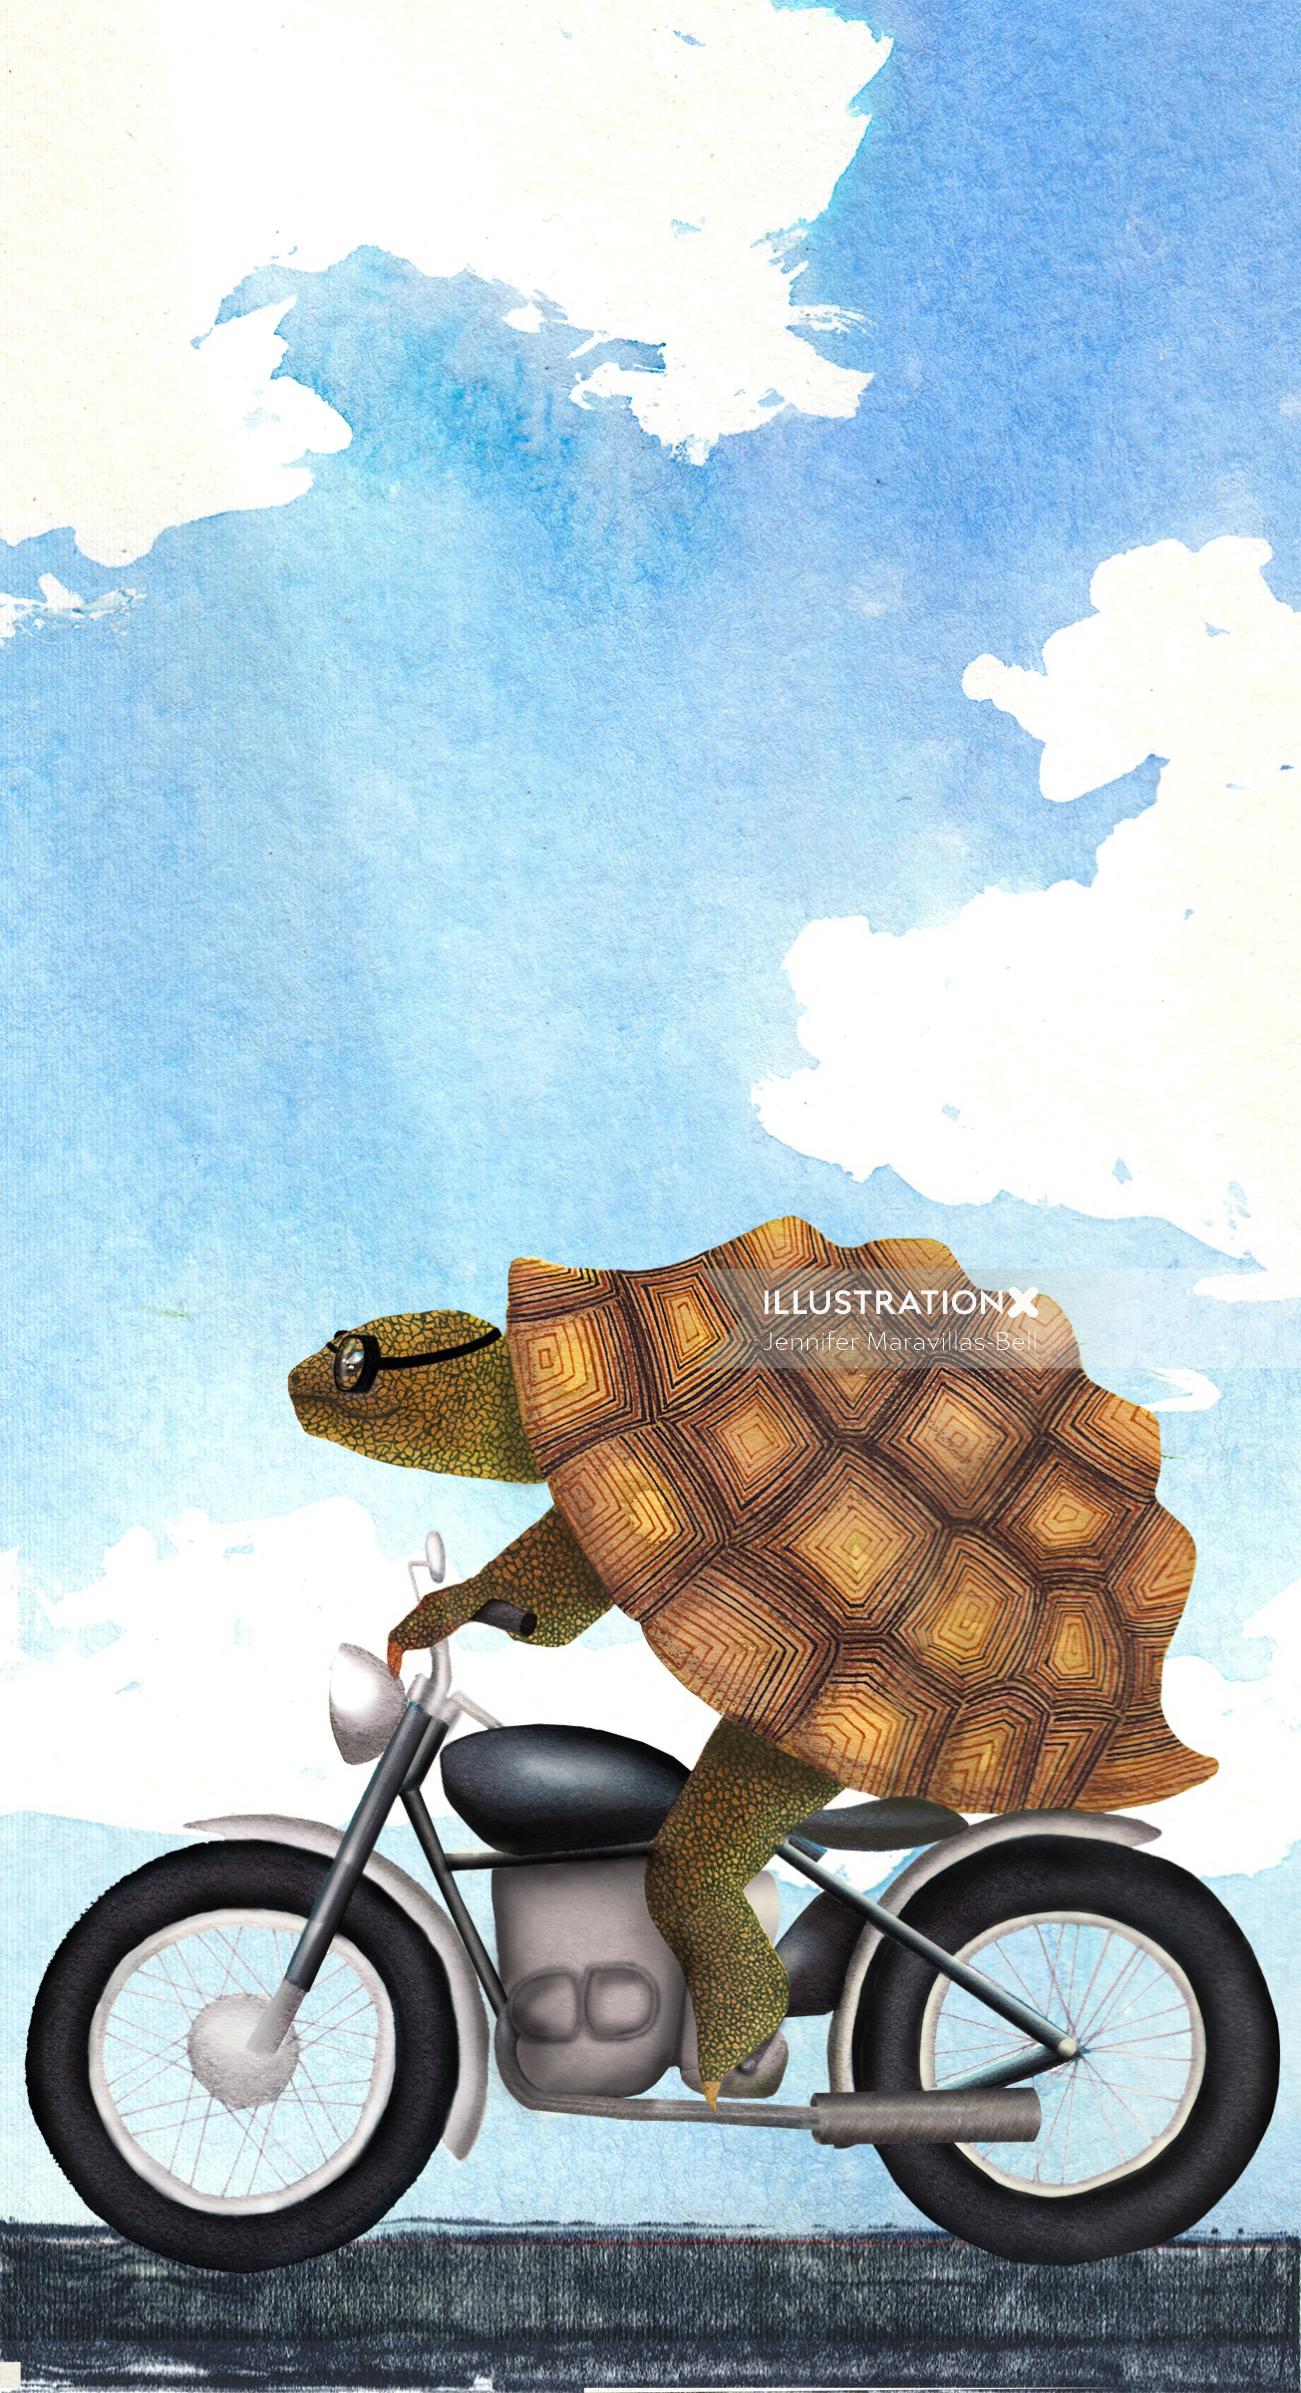 Uma ilustração da tartaruga na motocicleta